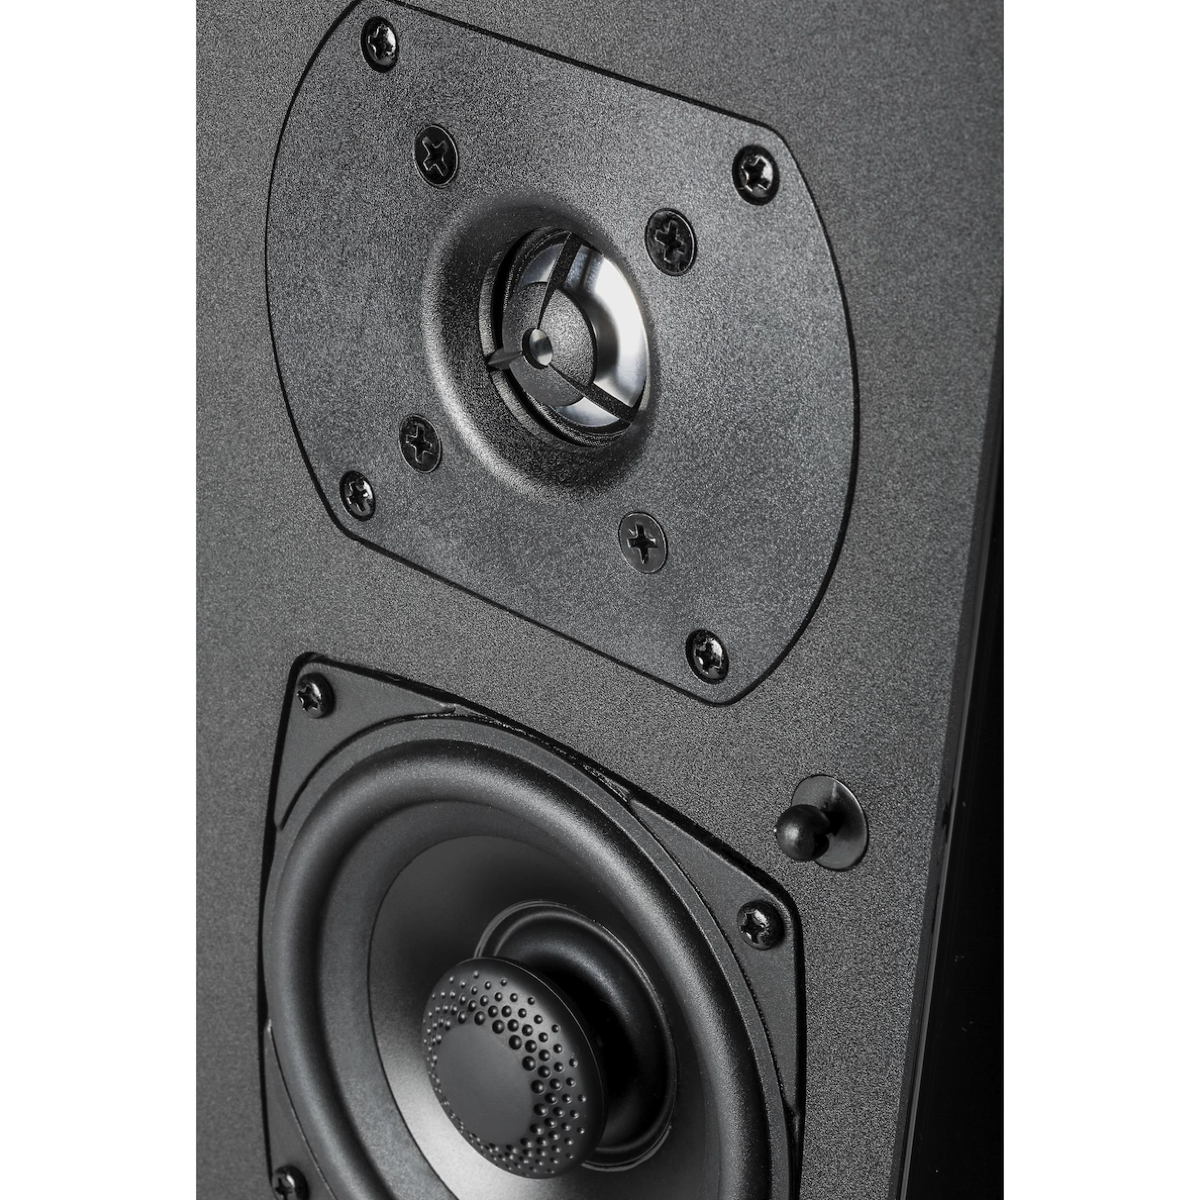 Definitive Technology SR9080 - Bipolar Surround Speaker (Pair) - AVStore